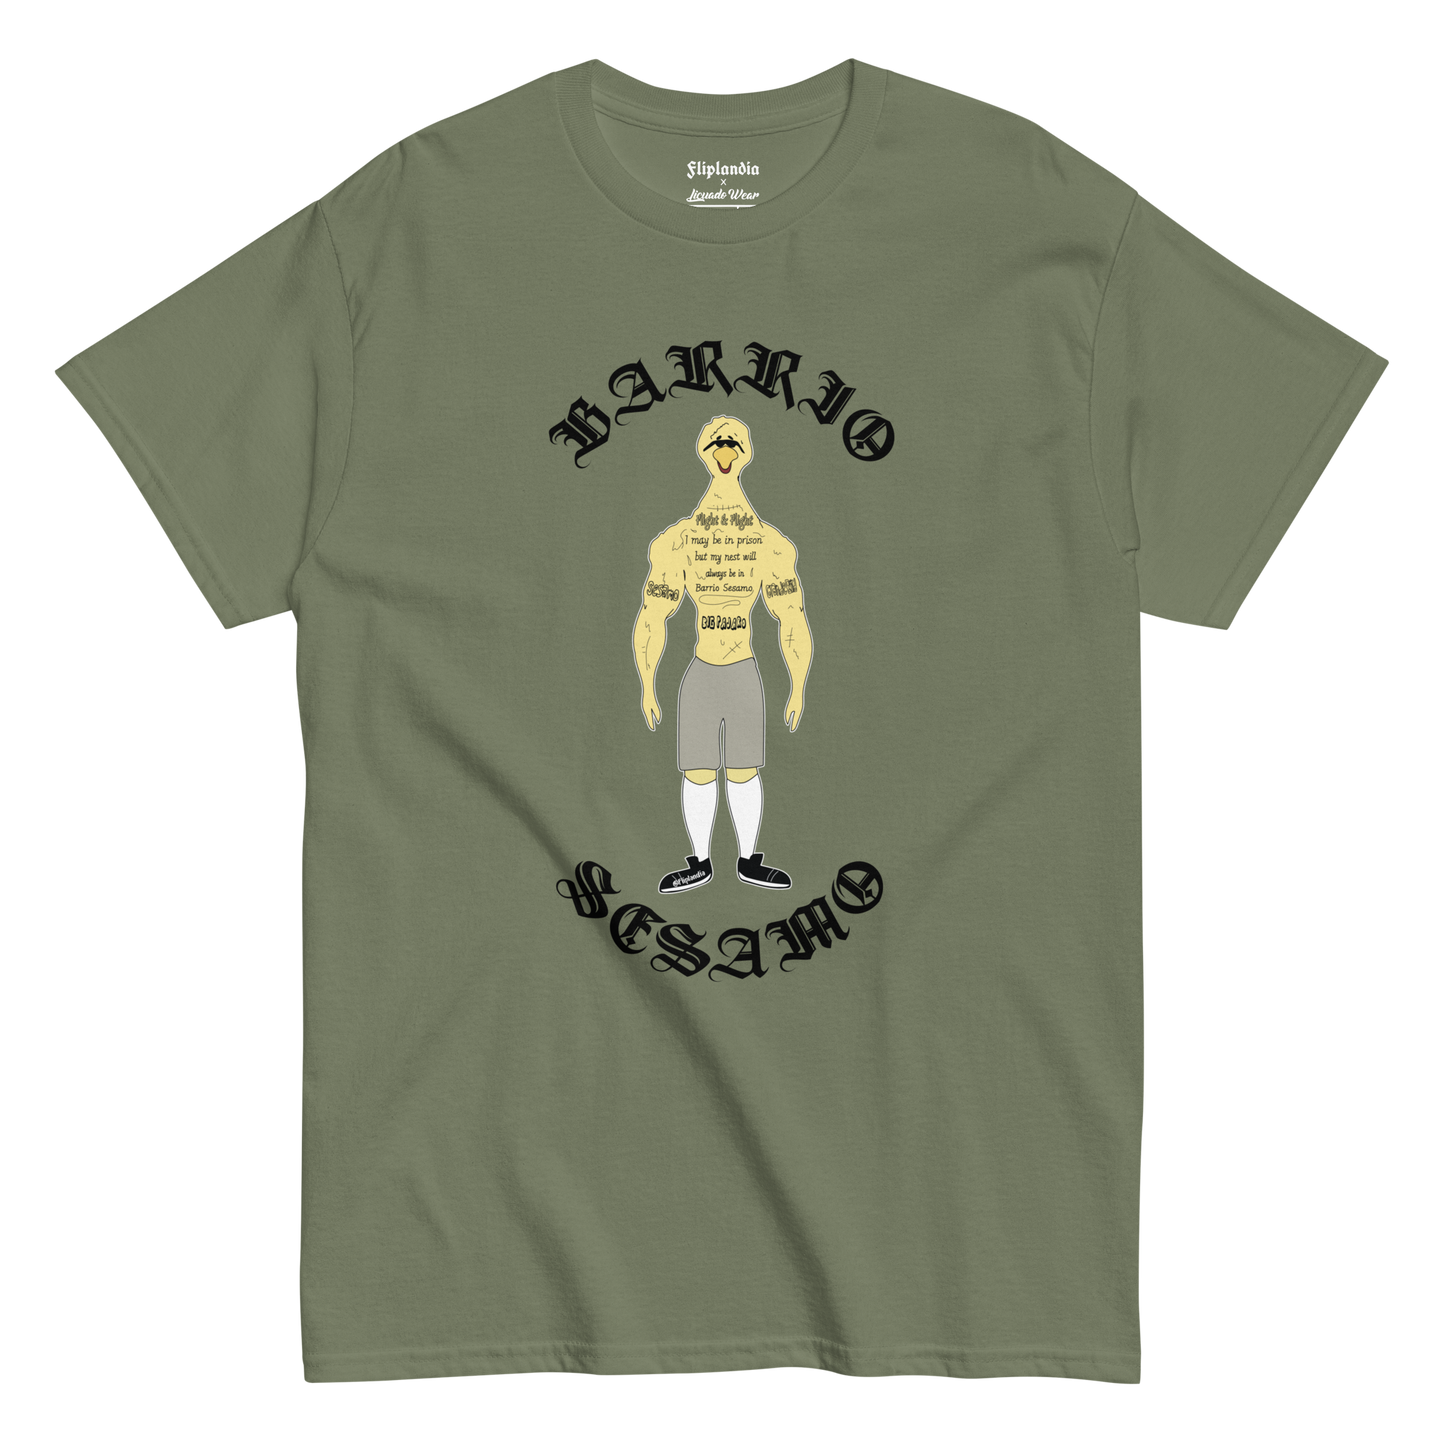 Big Pajaro - Fliplandia Unisex T-shirt